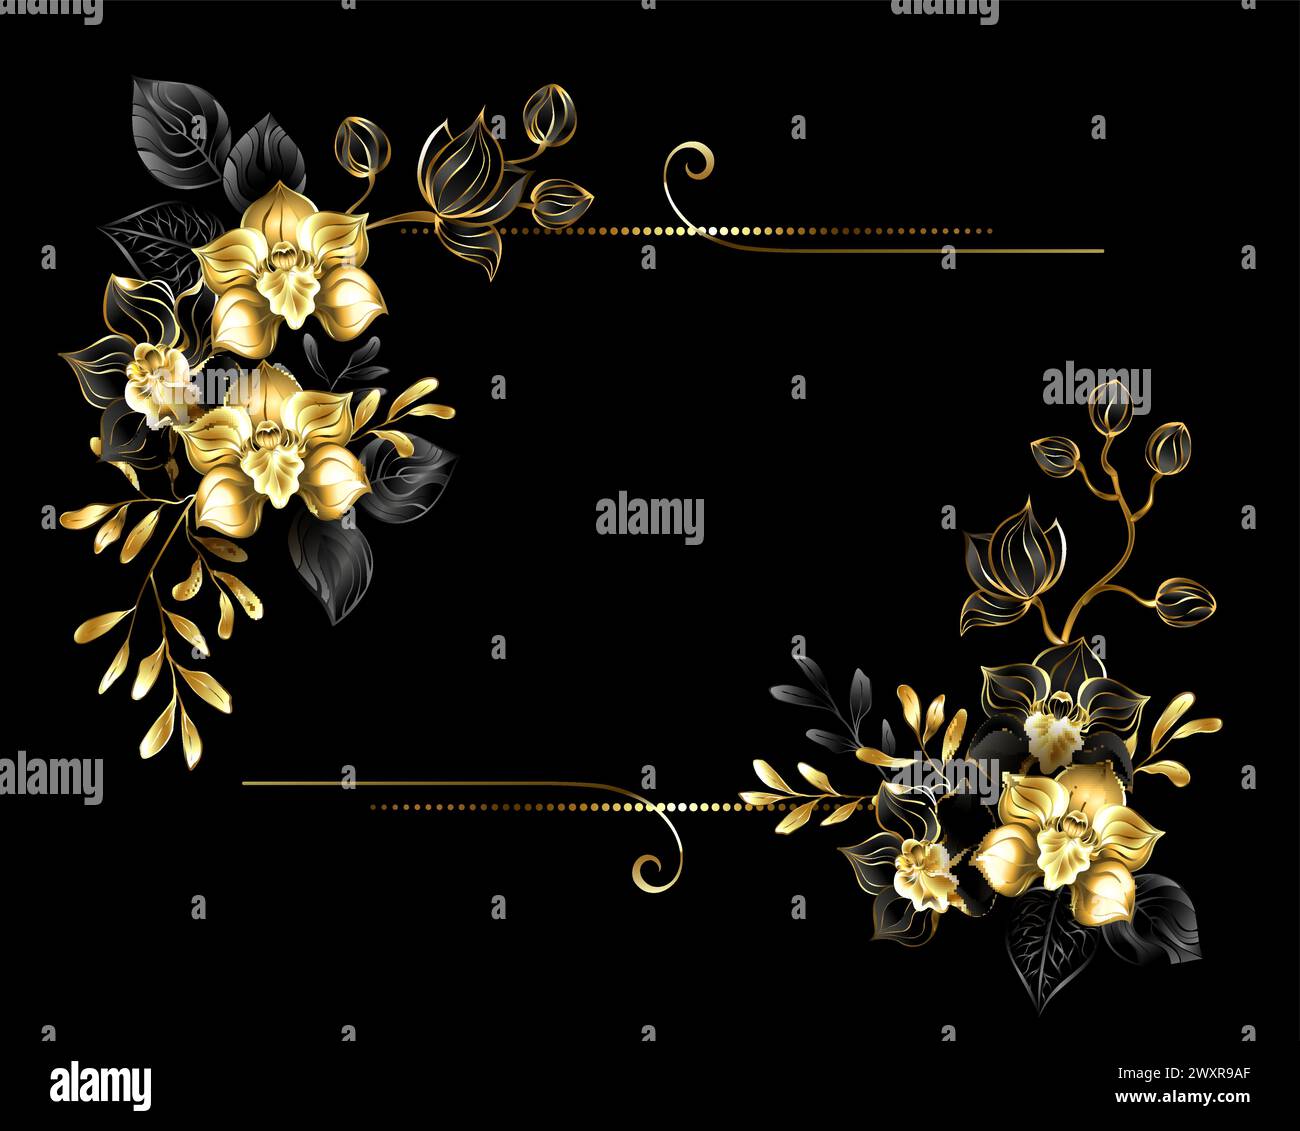 Composizione floreale rettangolare di orchidee artisticamente trafilate, nere e dorate, con rametti d'oro e neri di pistacchio ed eucalipto sul nero Illustrazione Vettoriale